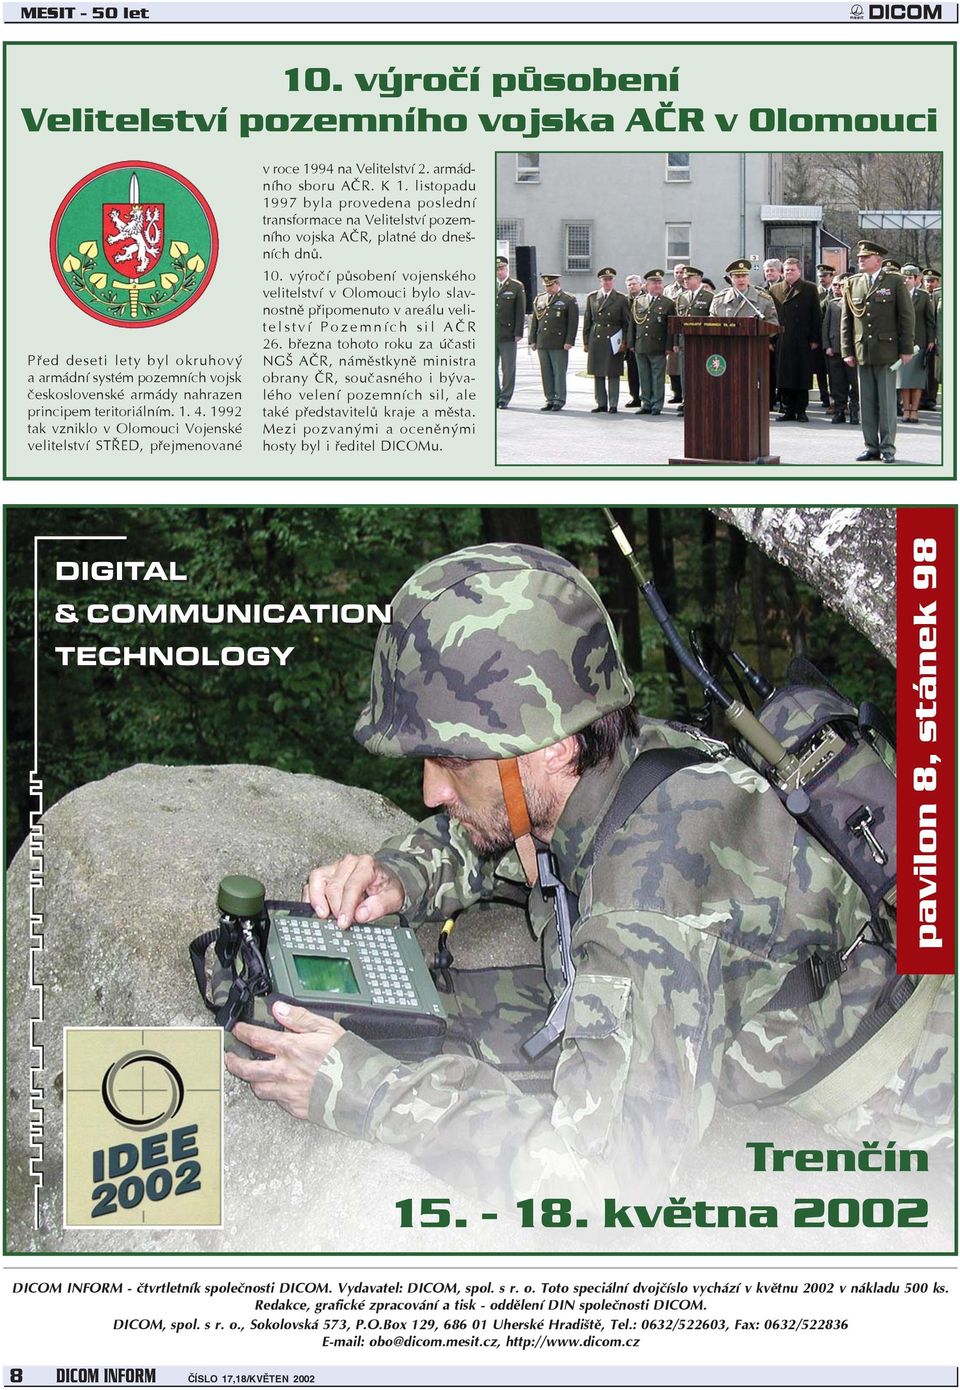 listopadu 1997 byla provedena poslední transformace na Velitelství pozemního vojska AÈR, platné do dnešních dnù. 10.